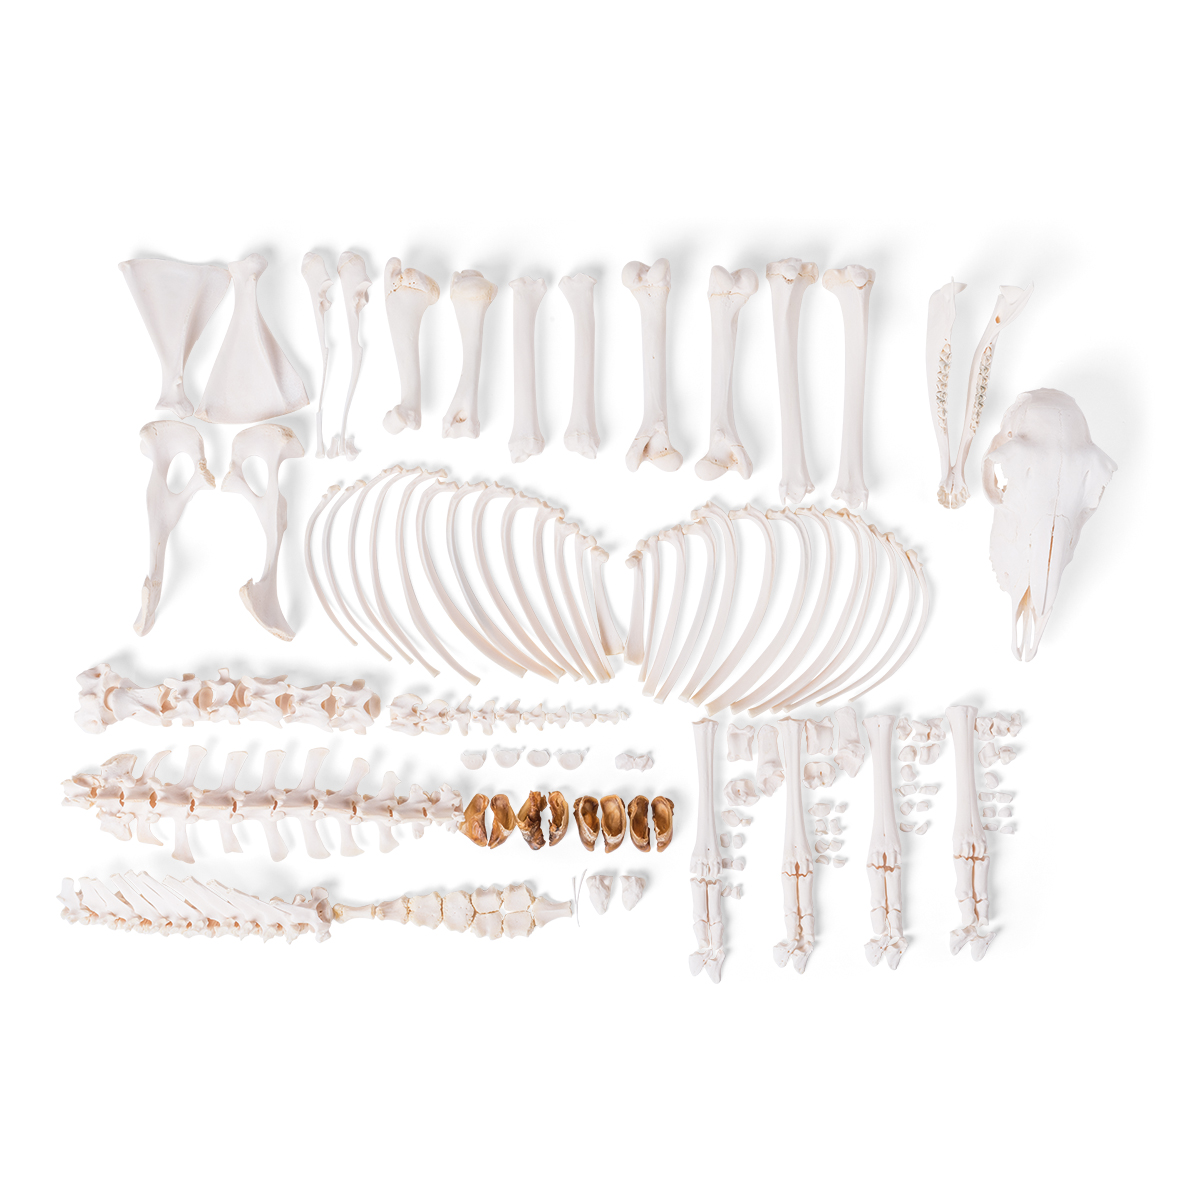 양 암컷 전신분리골격 Sheep skeleton (Ovis aries), female, disarticulated T300361FU [1021026]